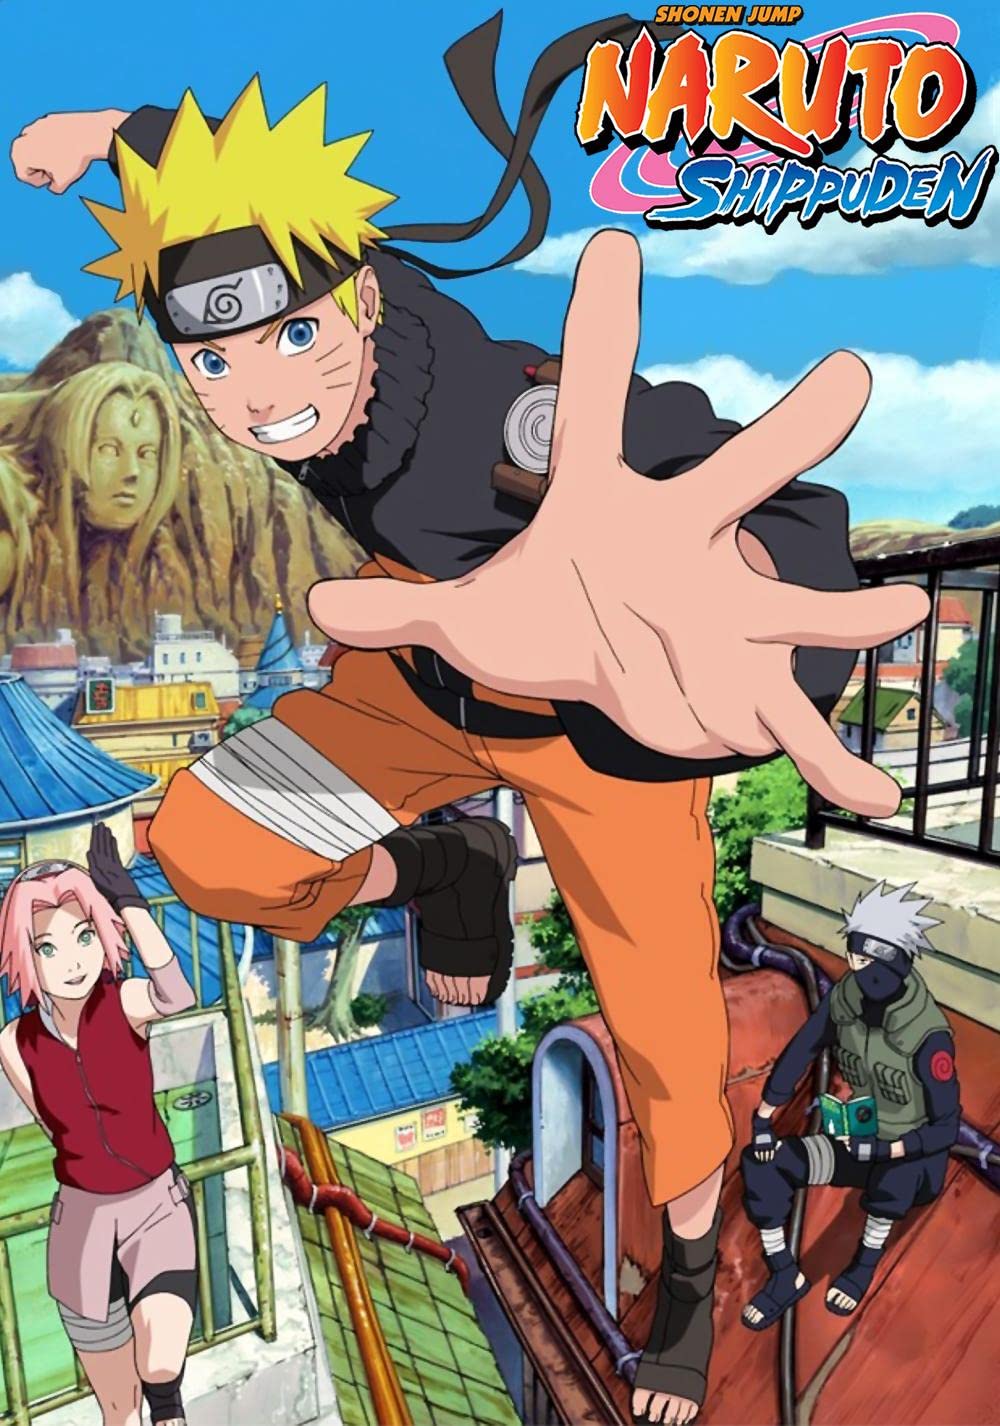 Do it even if it kills him.”: Naruto Almost Didn’t Get its Most Popular Arc Reveals Mangaka Kishimoto